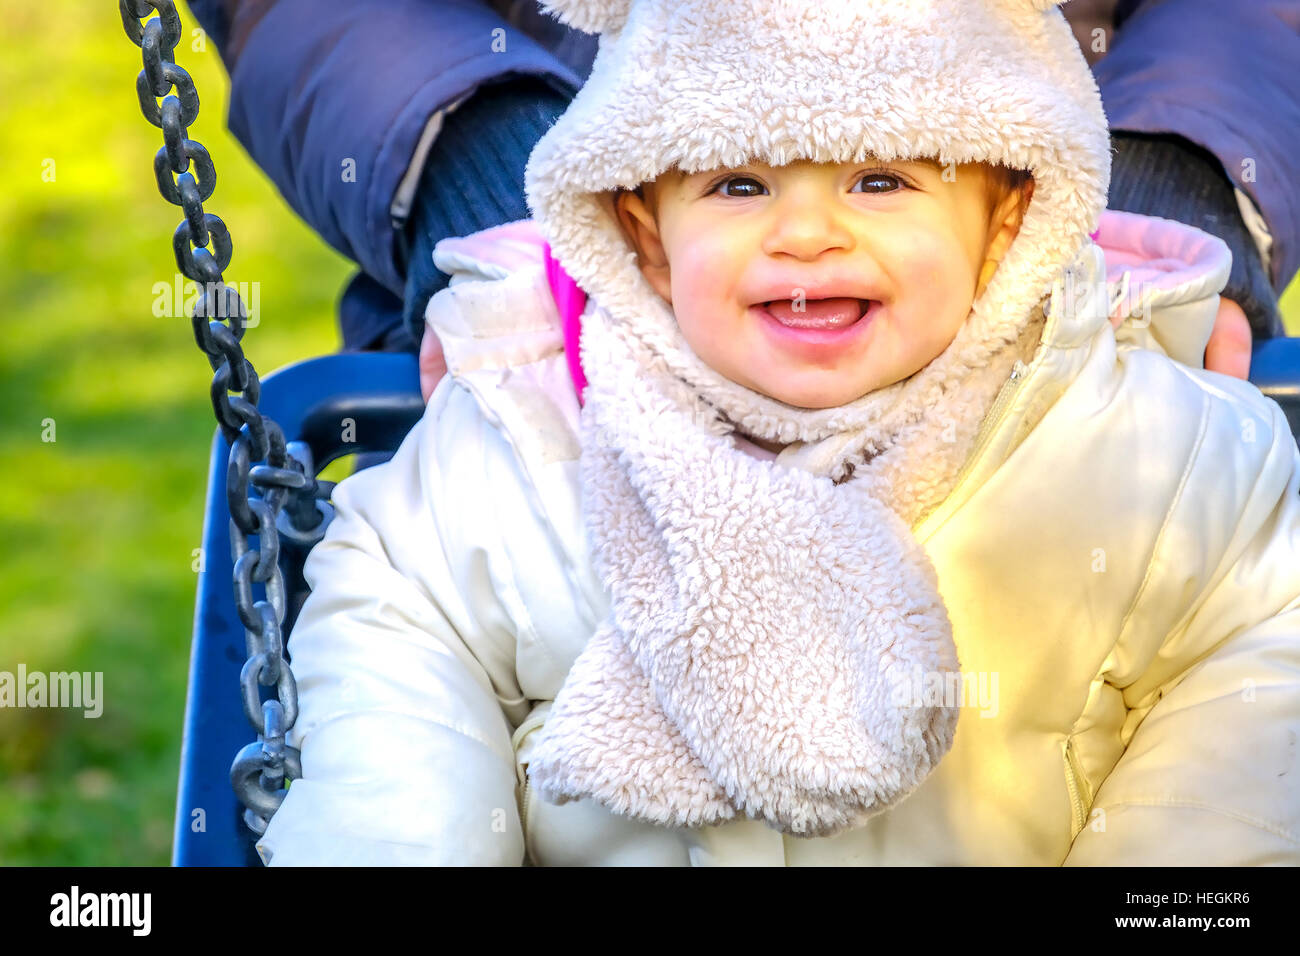 Neugeborenen Schaukel Baby Lächeln Winterspaß spielen Park Spielplatz im freien Stockfoto